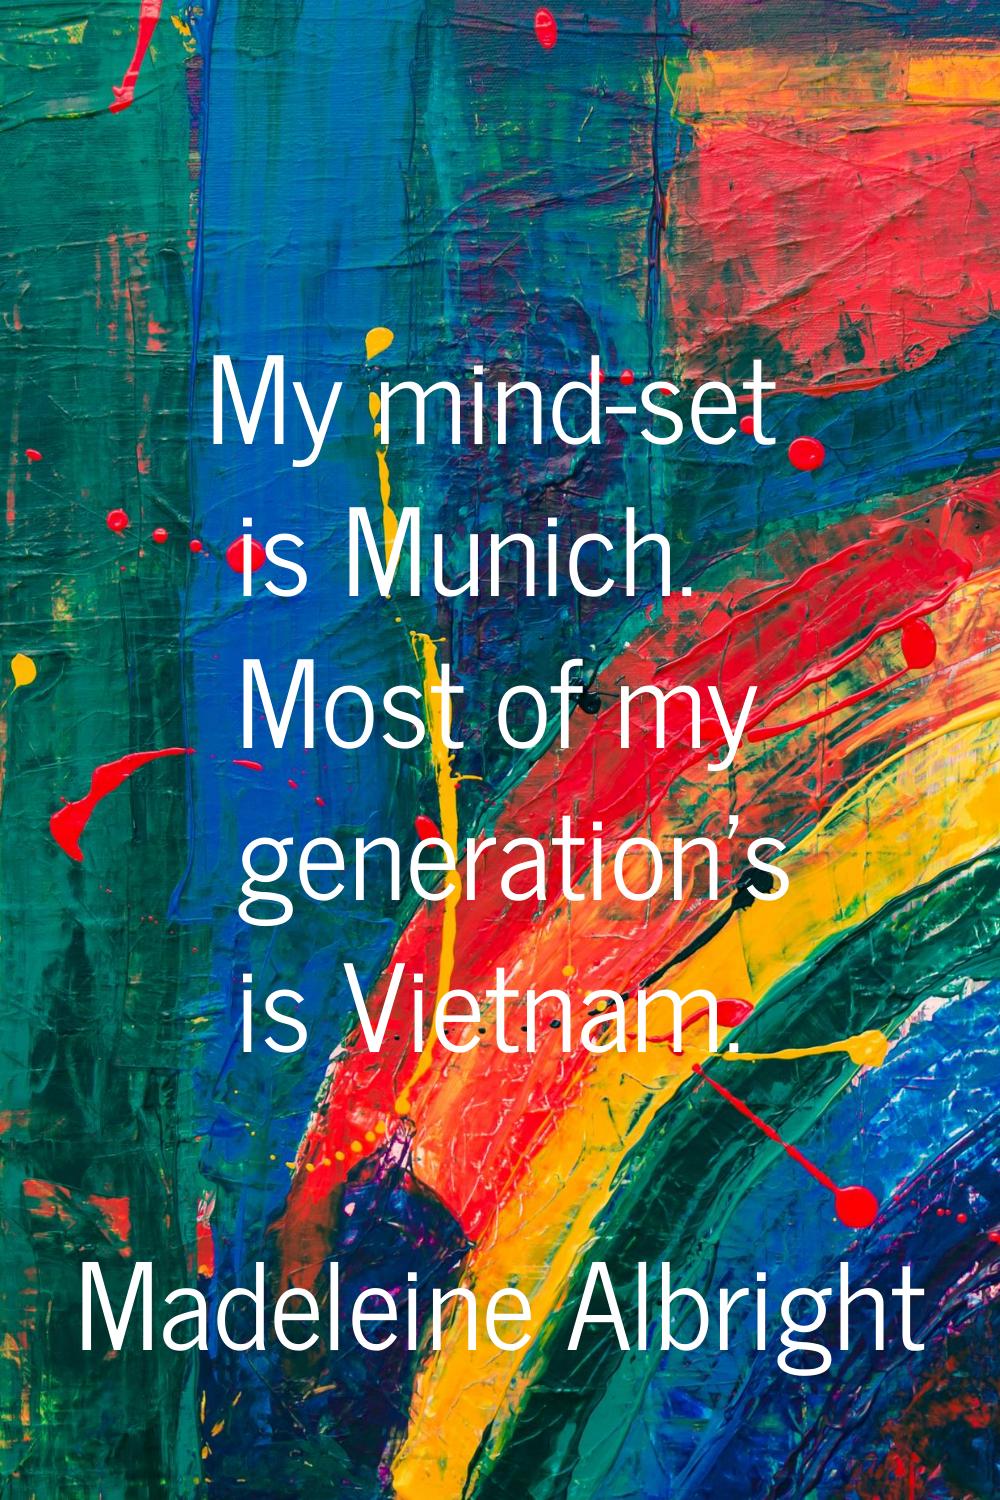 My mind-set is Munich. Most of my generation's is Vietnam.